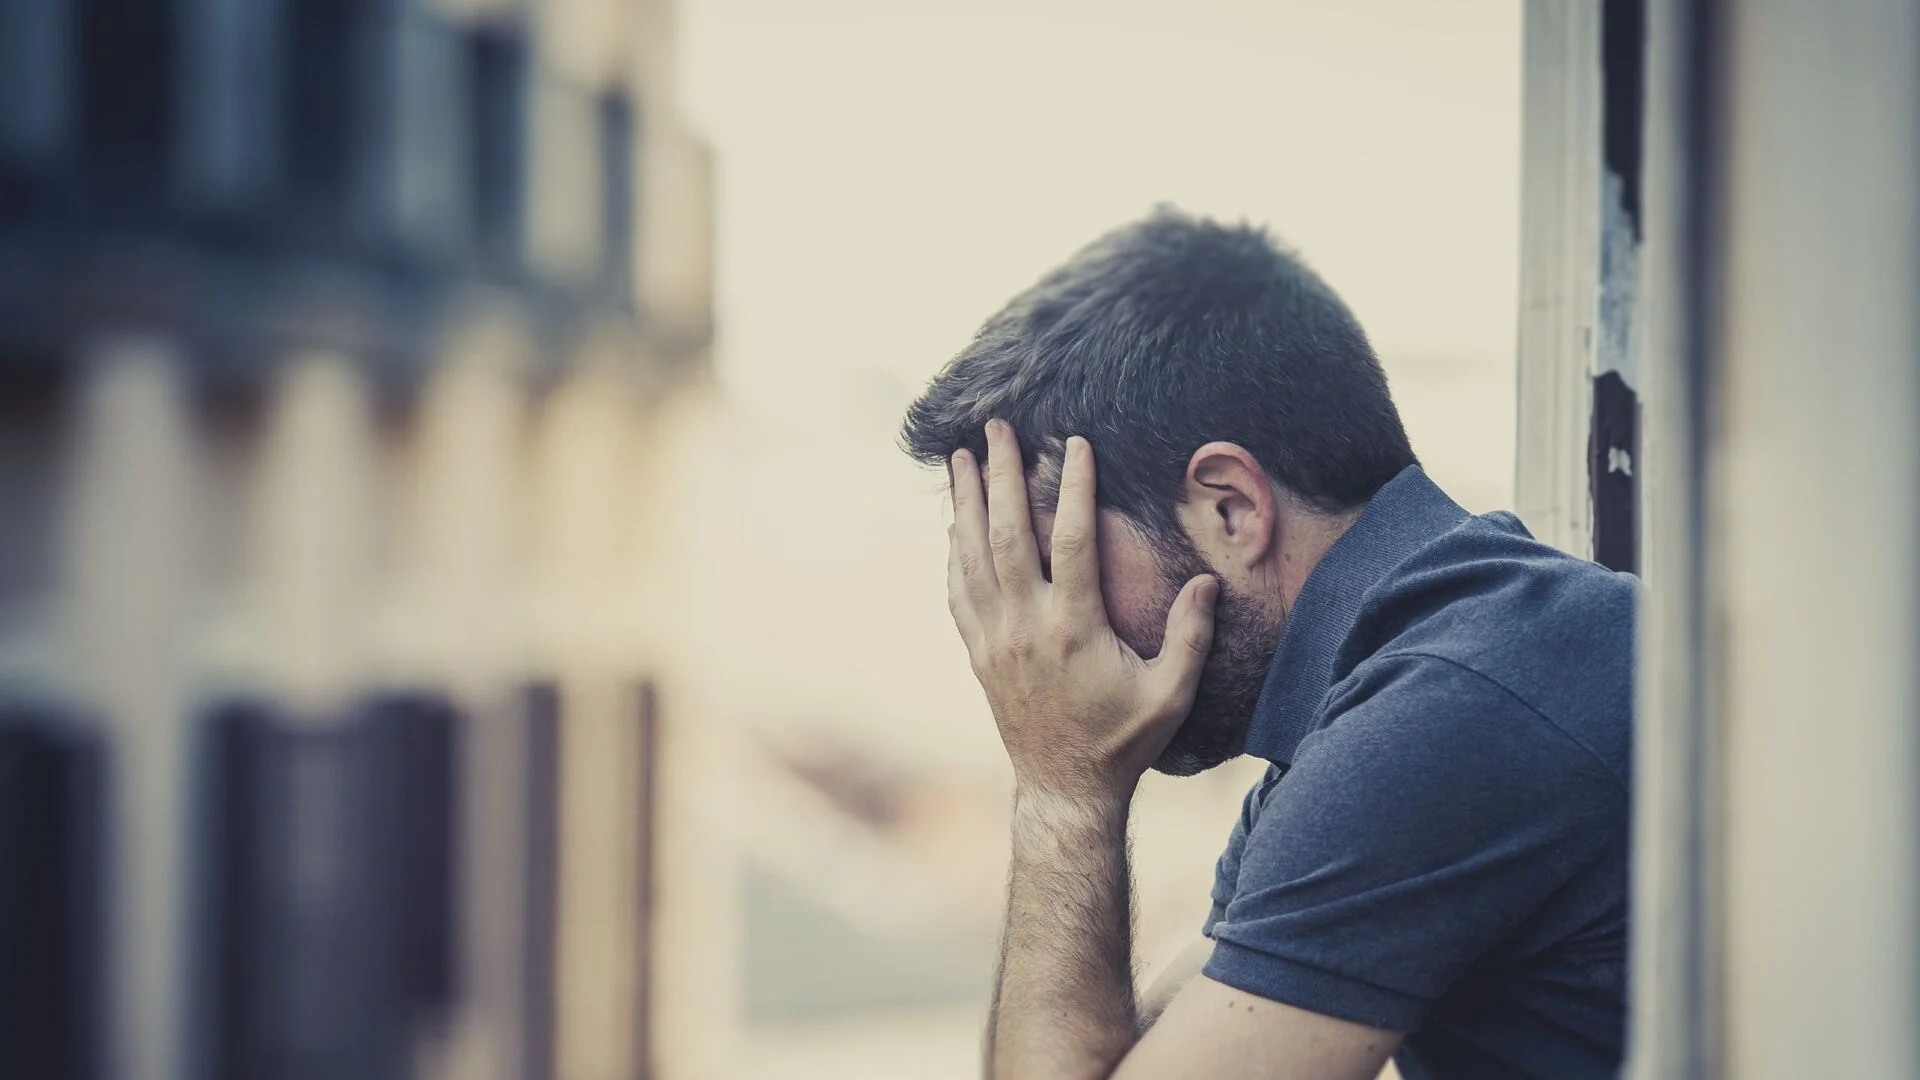 Депресия: Защо мъжете я преживяват с гняв и агресия вместо сълзи?